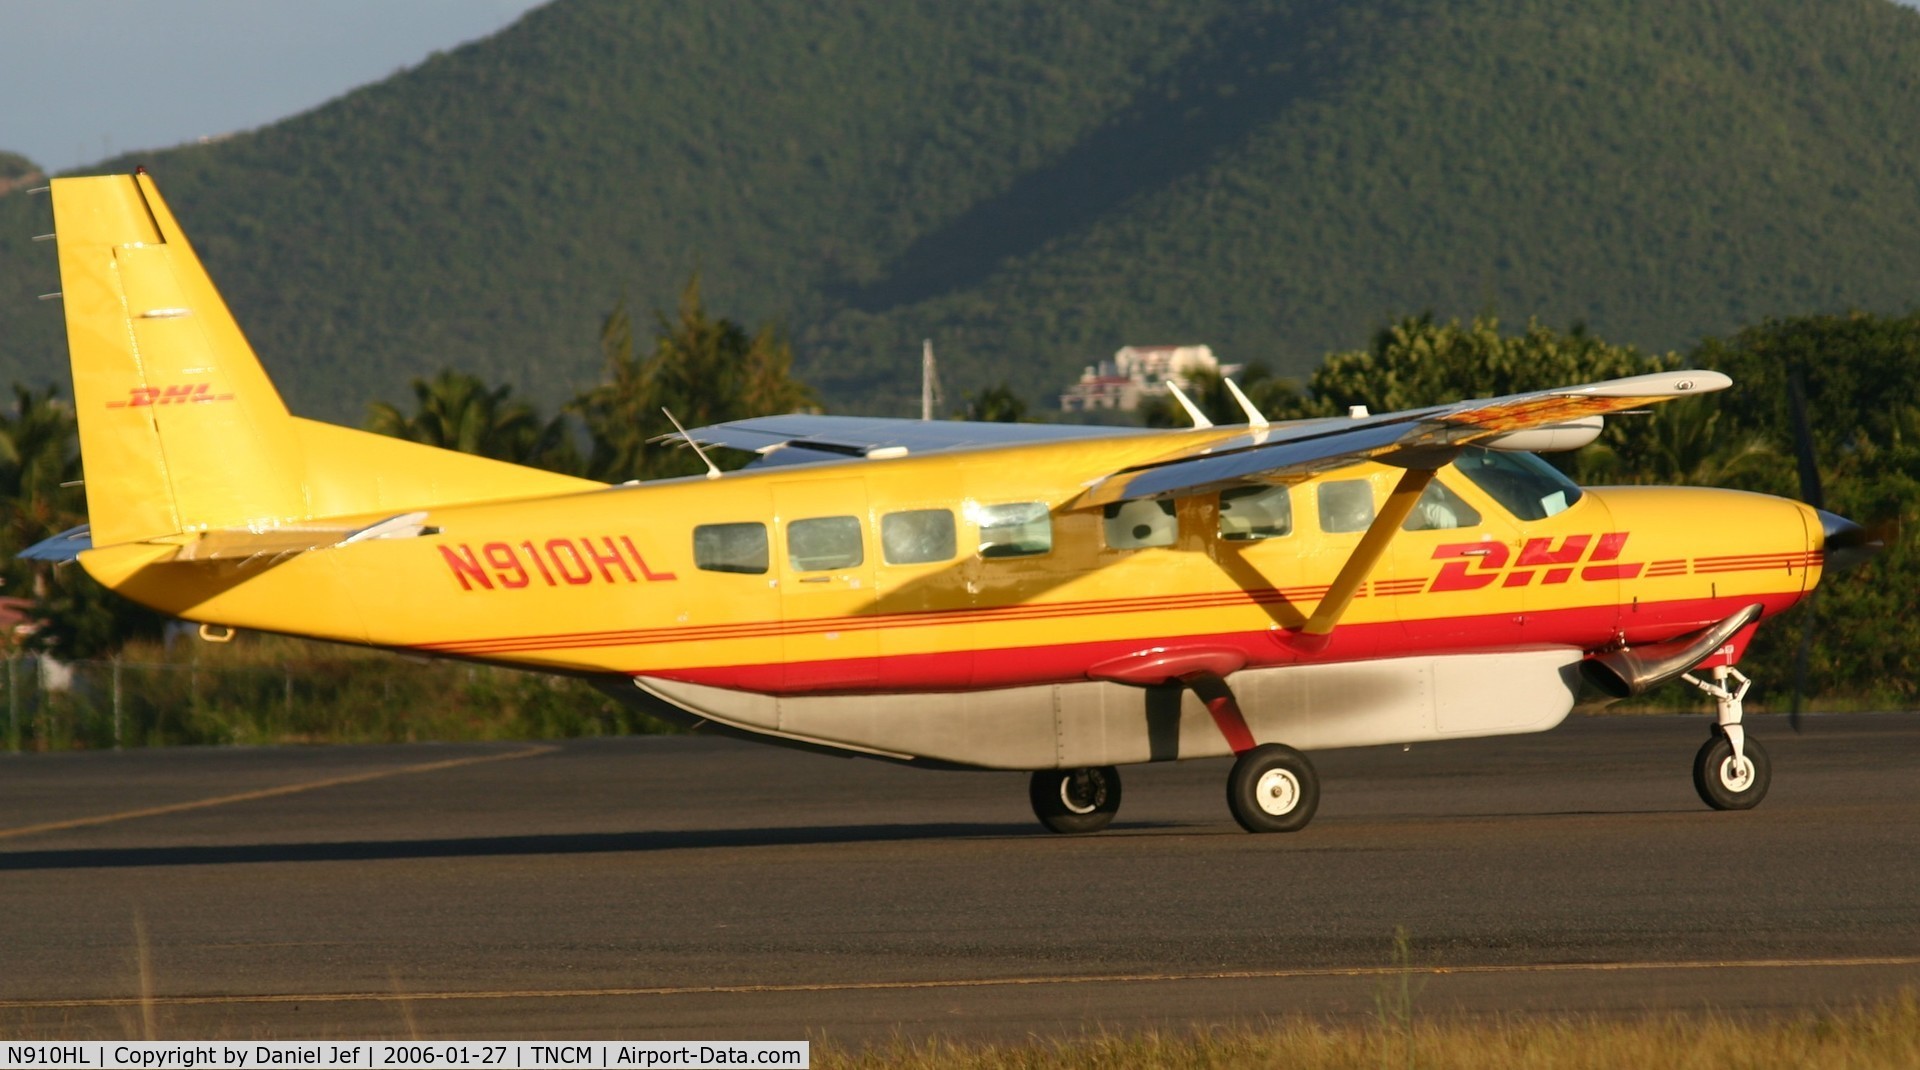 N910HL, 2004 Cessna 208B Grand Caravan C/N 208B1080, DHL N910HL departing TNCM runway 10